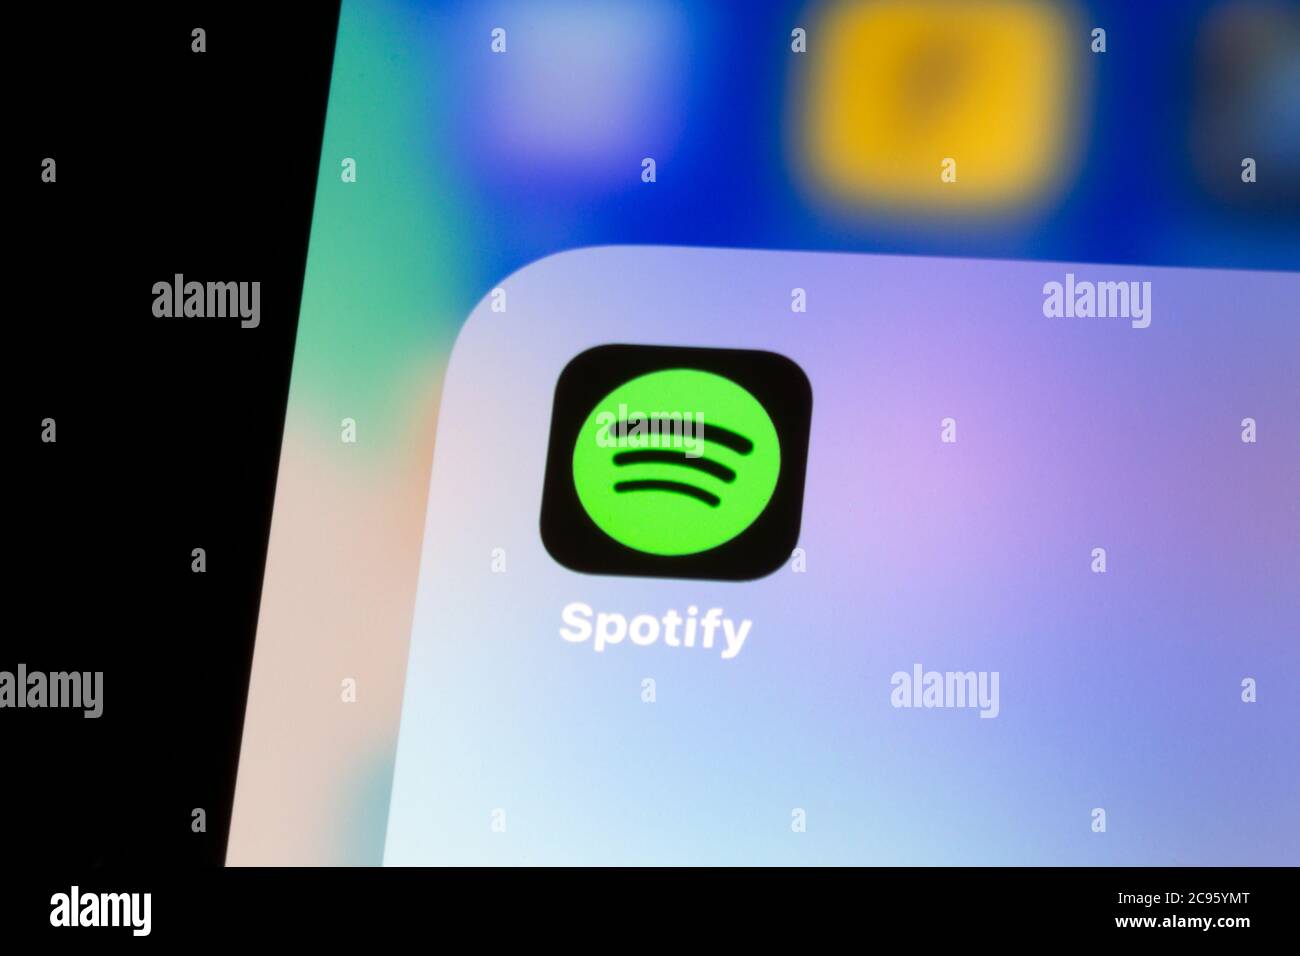 Ostersund, Svezia - 29 luglio 2020: Icona dell'app Spotify. Spotify è un provider svedese di servizi multimediali e di streaming di musica. Foto Stock